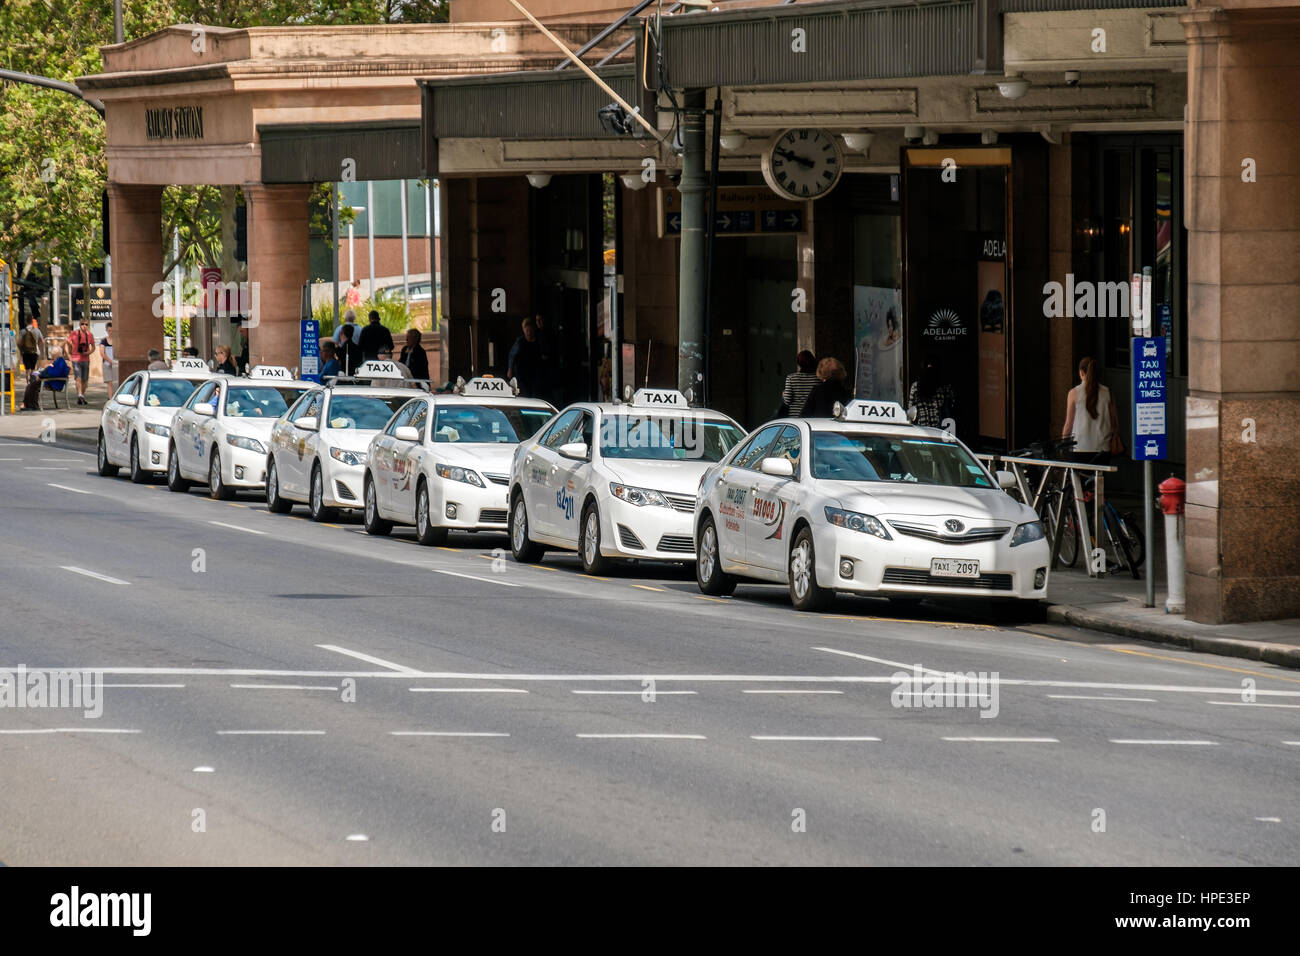 Adelaide, Australien - 11. November 2016: Taxi-Autos in der Nähe von Adelaide Bahnhof gesehen auf der Nordterrasse an einem Tag. Toyota Camry ist das meisten po Stockfoto